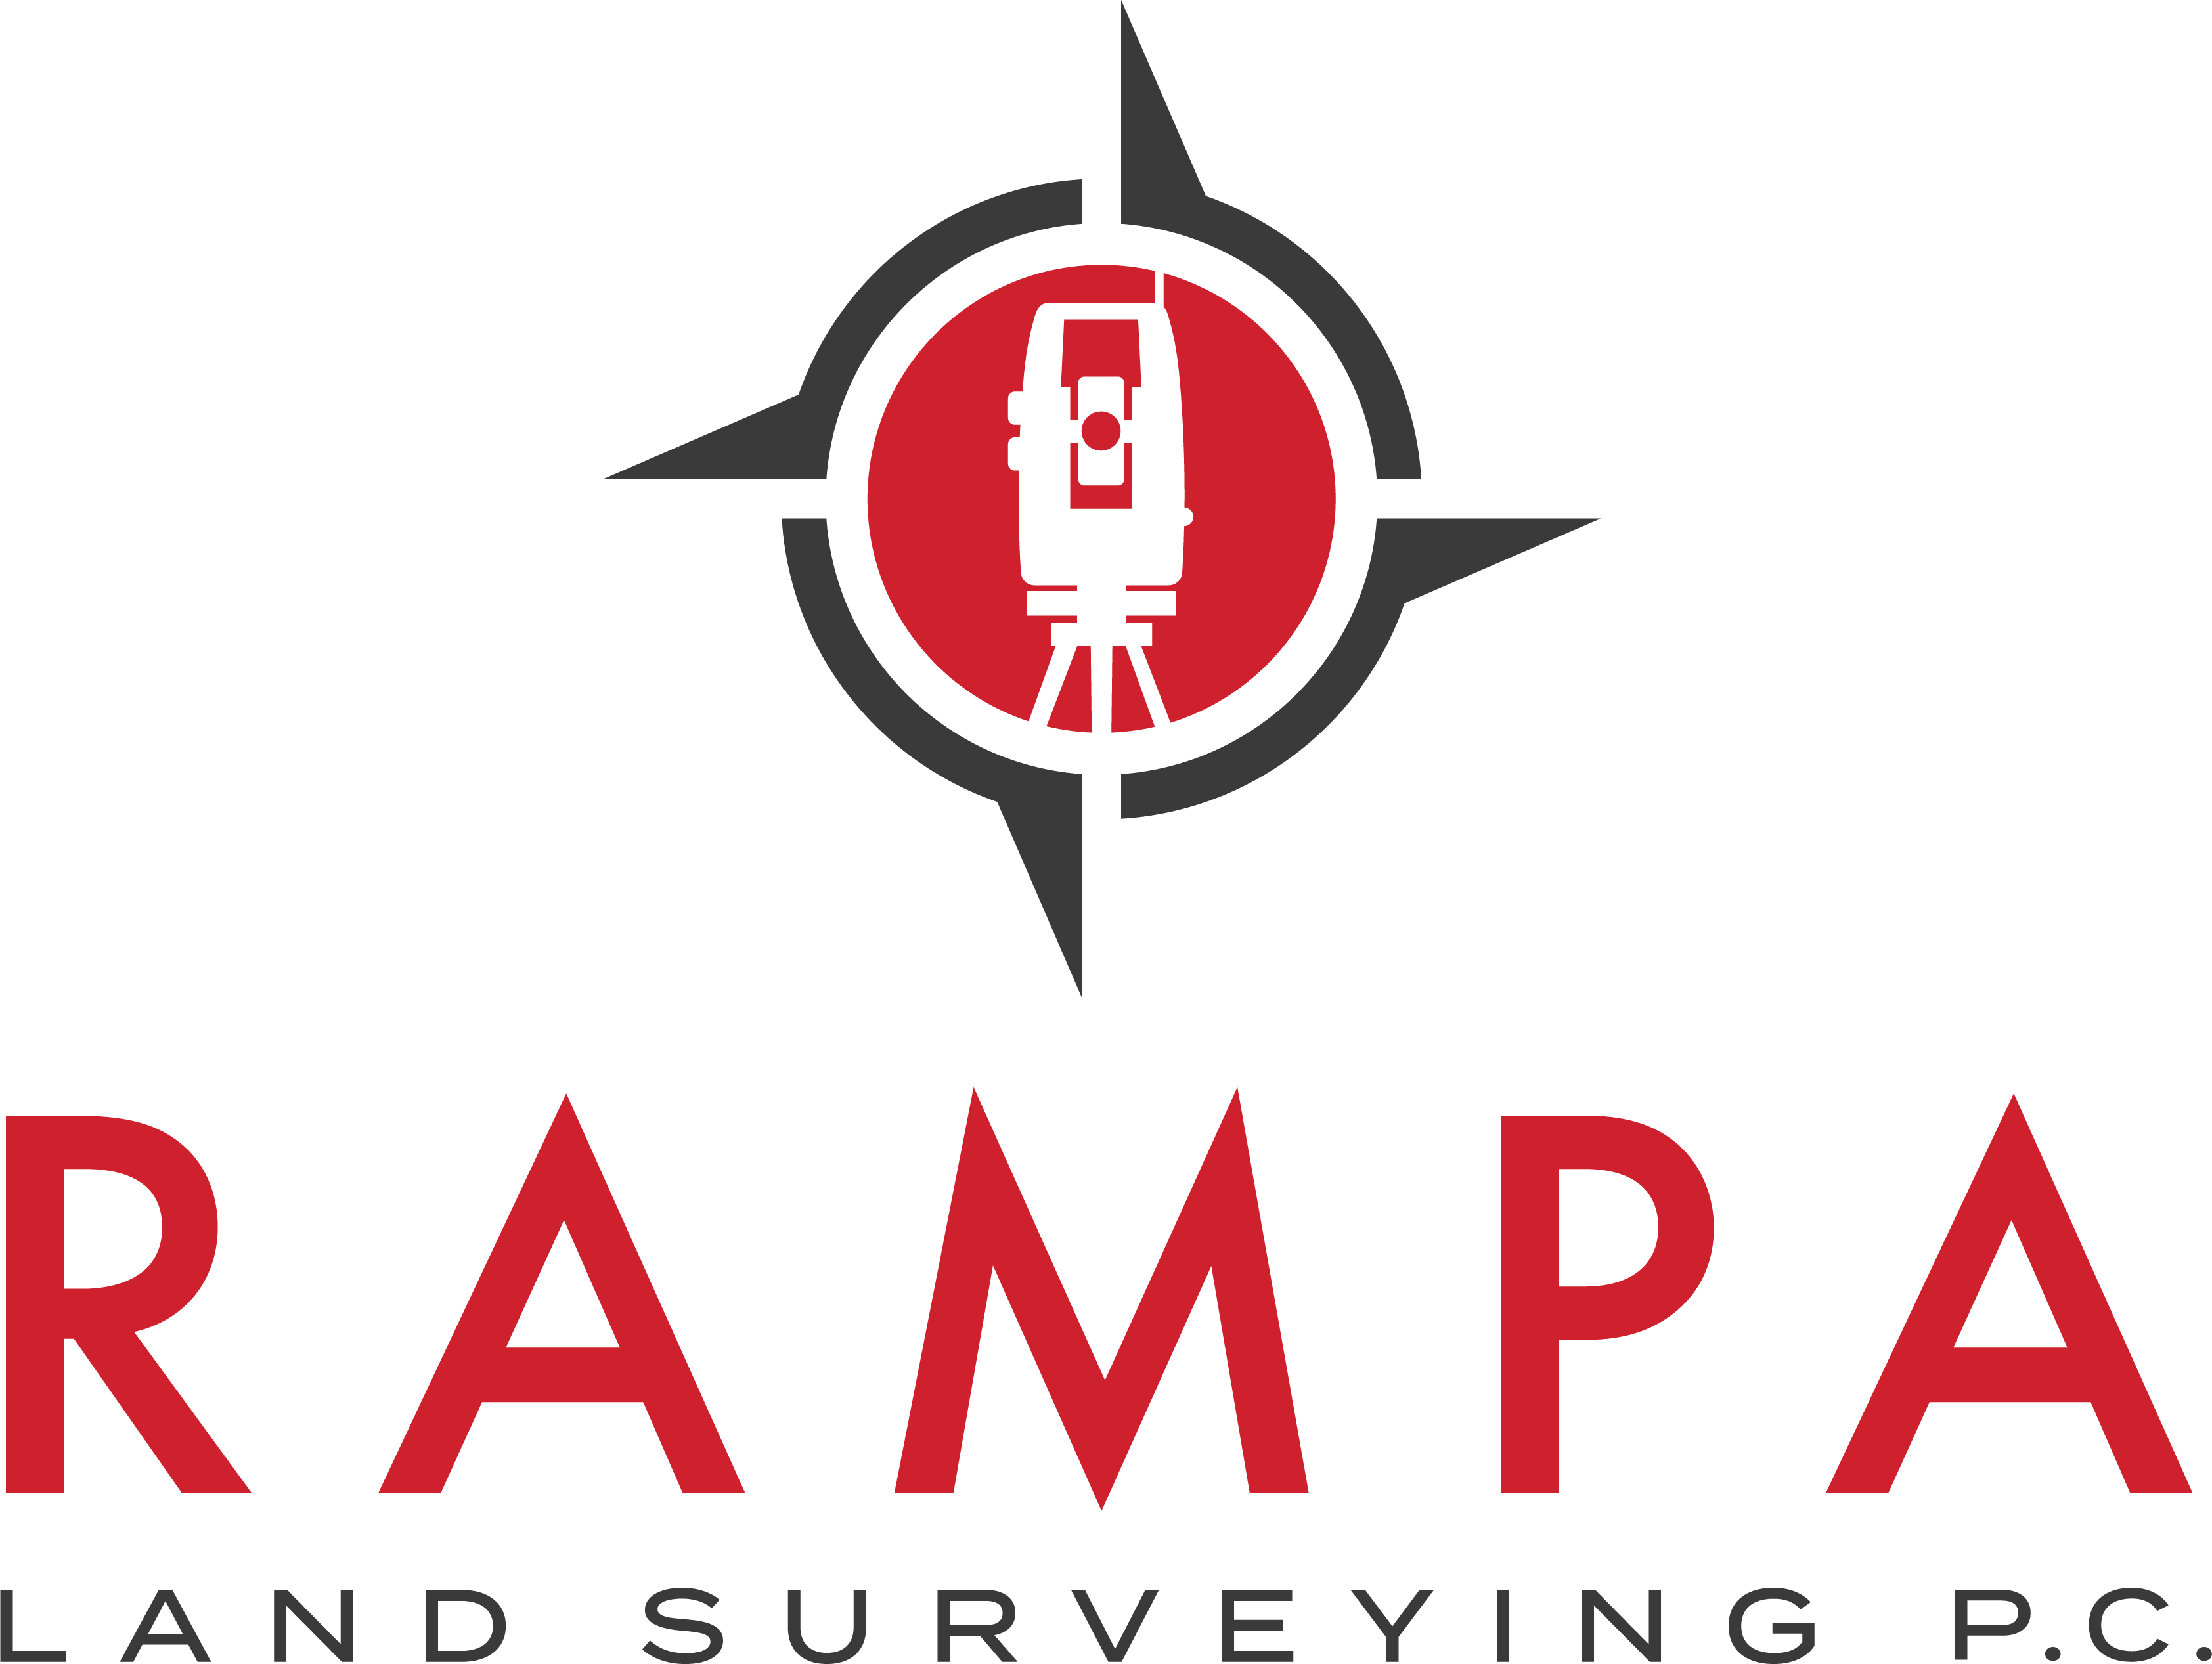 Surveying Logo - Rampa Land Surveying Logo. Surveyor. Logos, Map, Contour